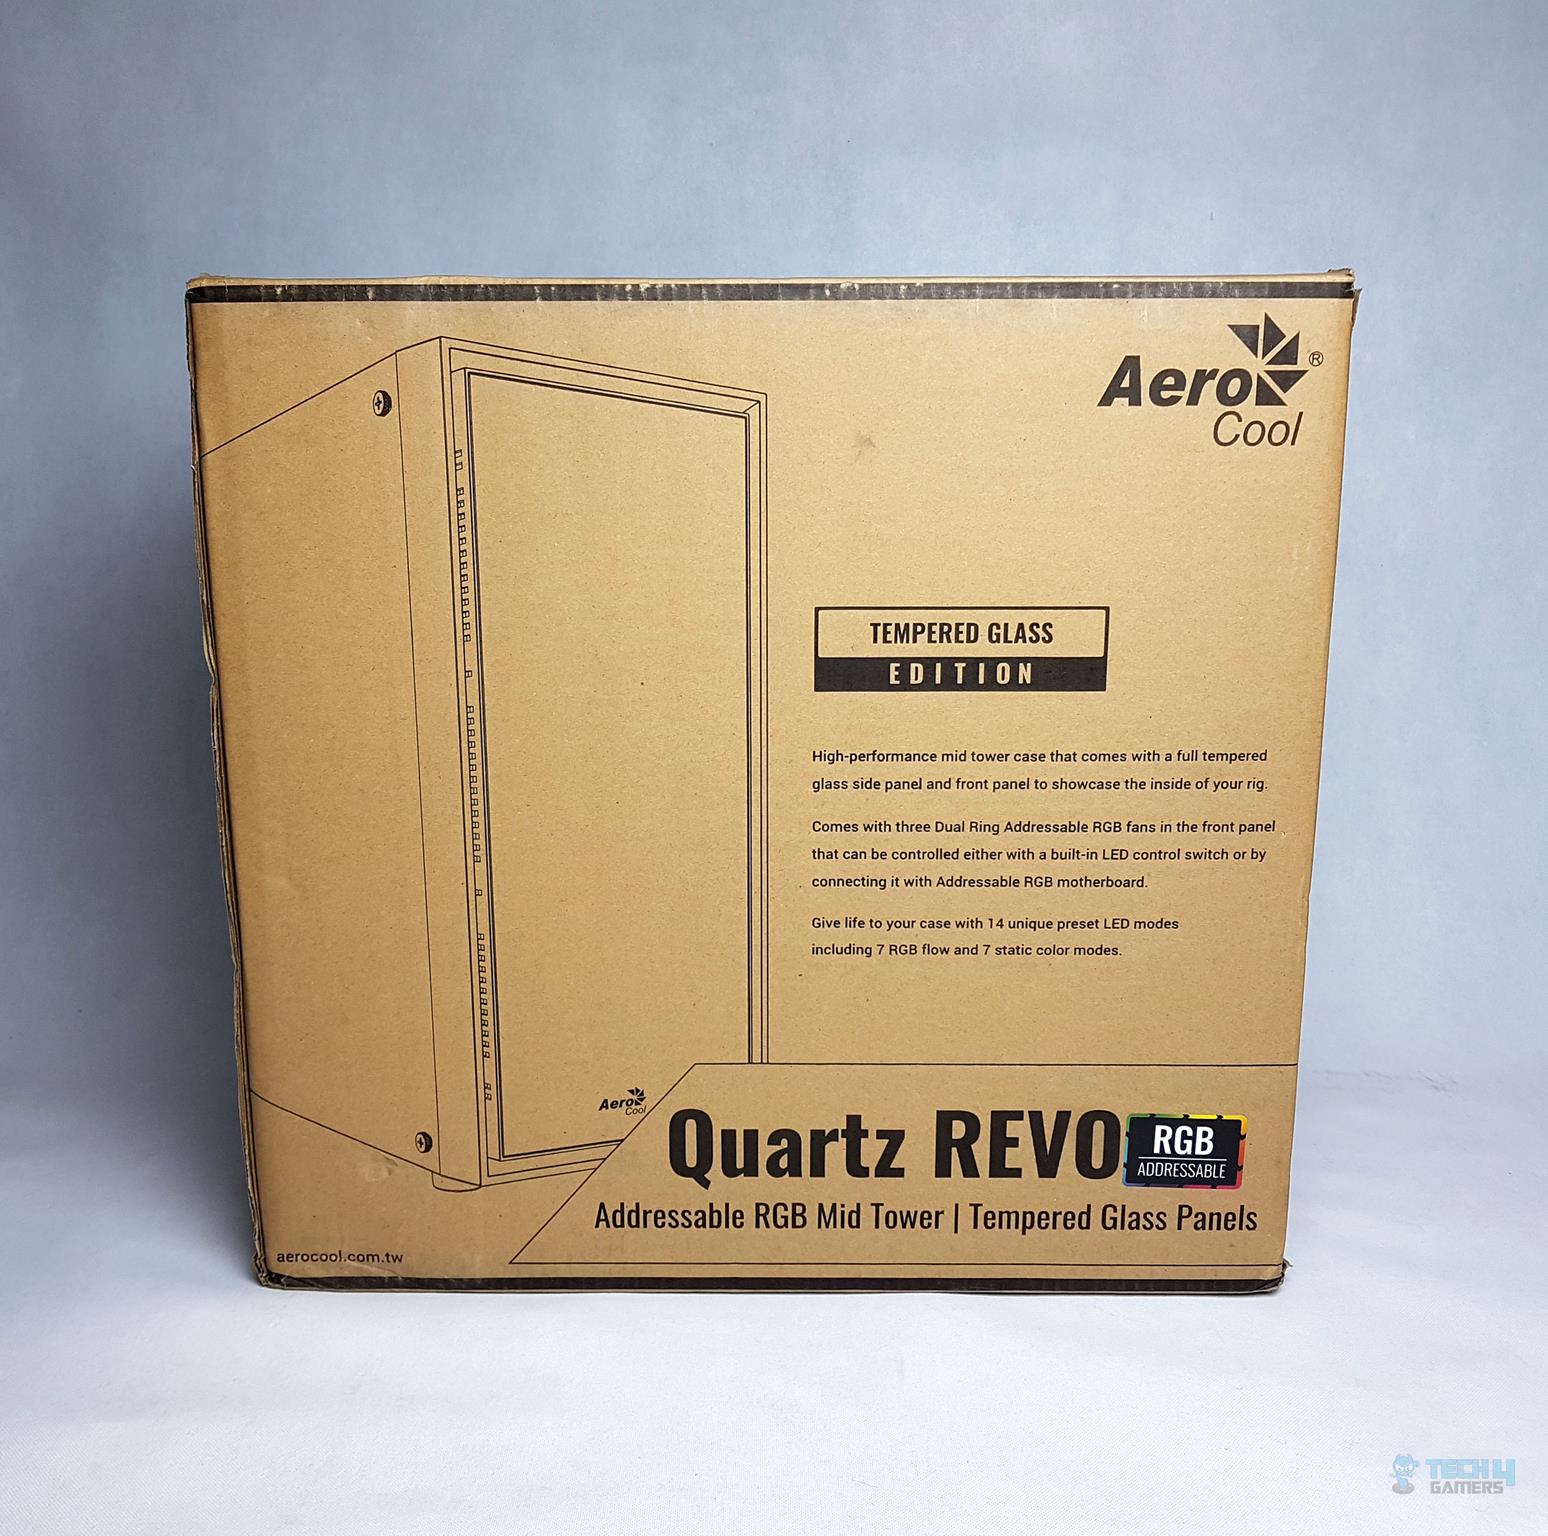  Aerocool Quartz Revo RGB Mid-Tower Chassis — Packaging